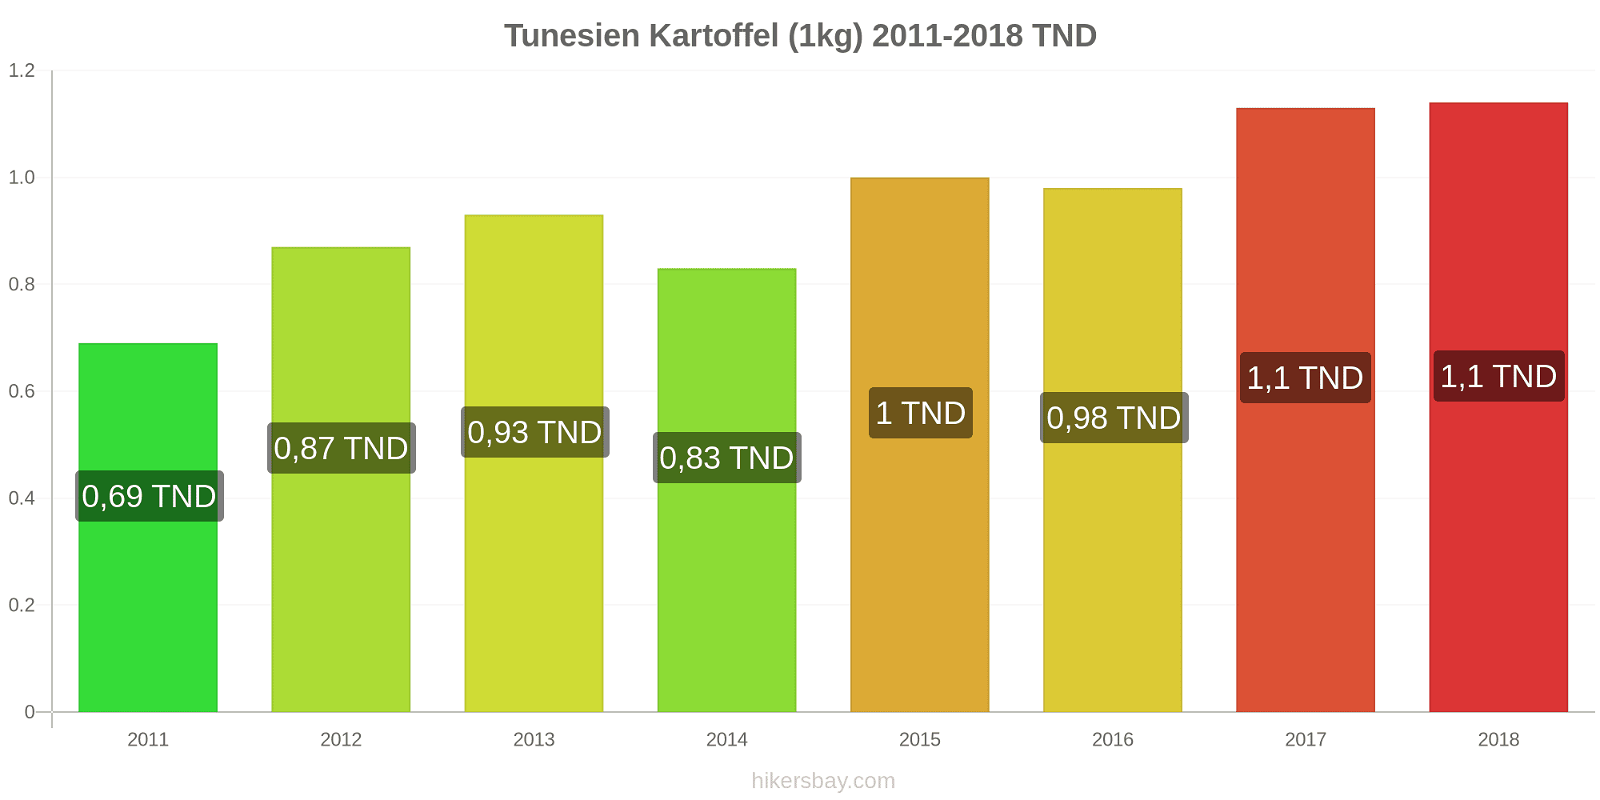 Tunesien Preisänderungen Kartoffeln (1kg) hikersbay.com